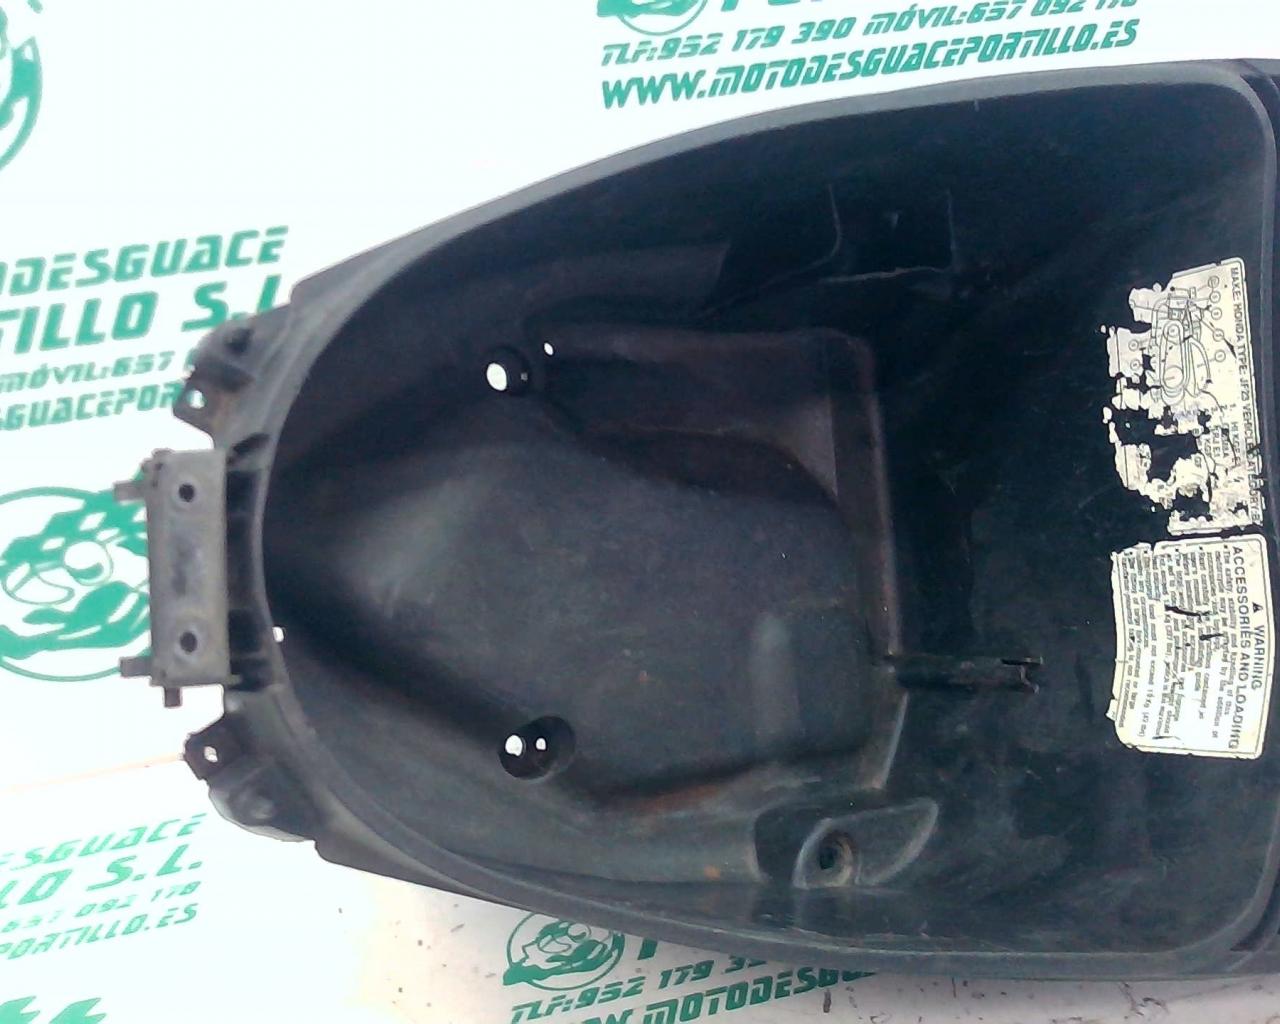 Porta-casco Honda SH 125 i 09-10 (2009-2010)